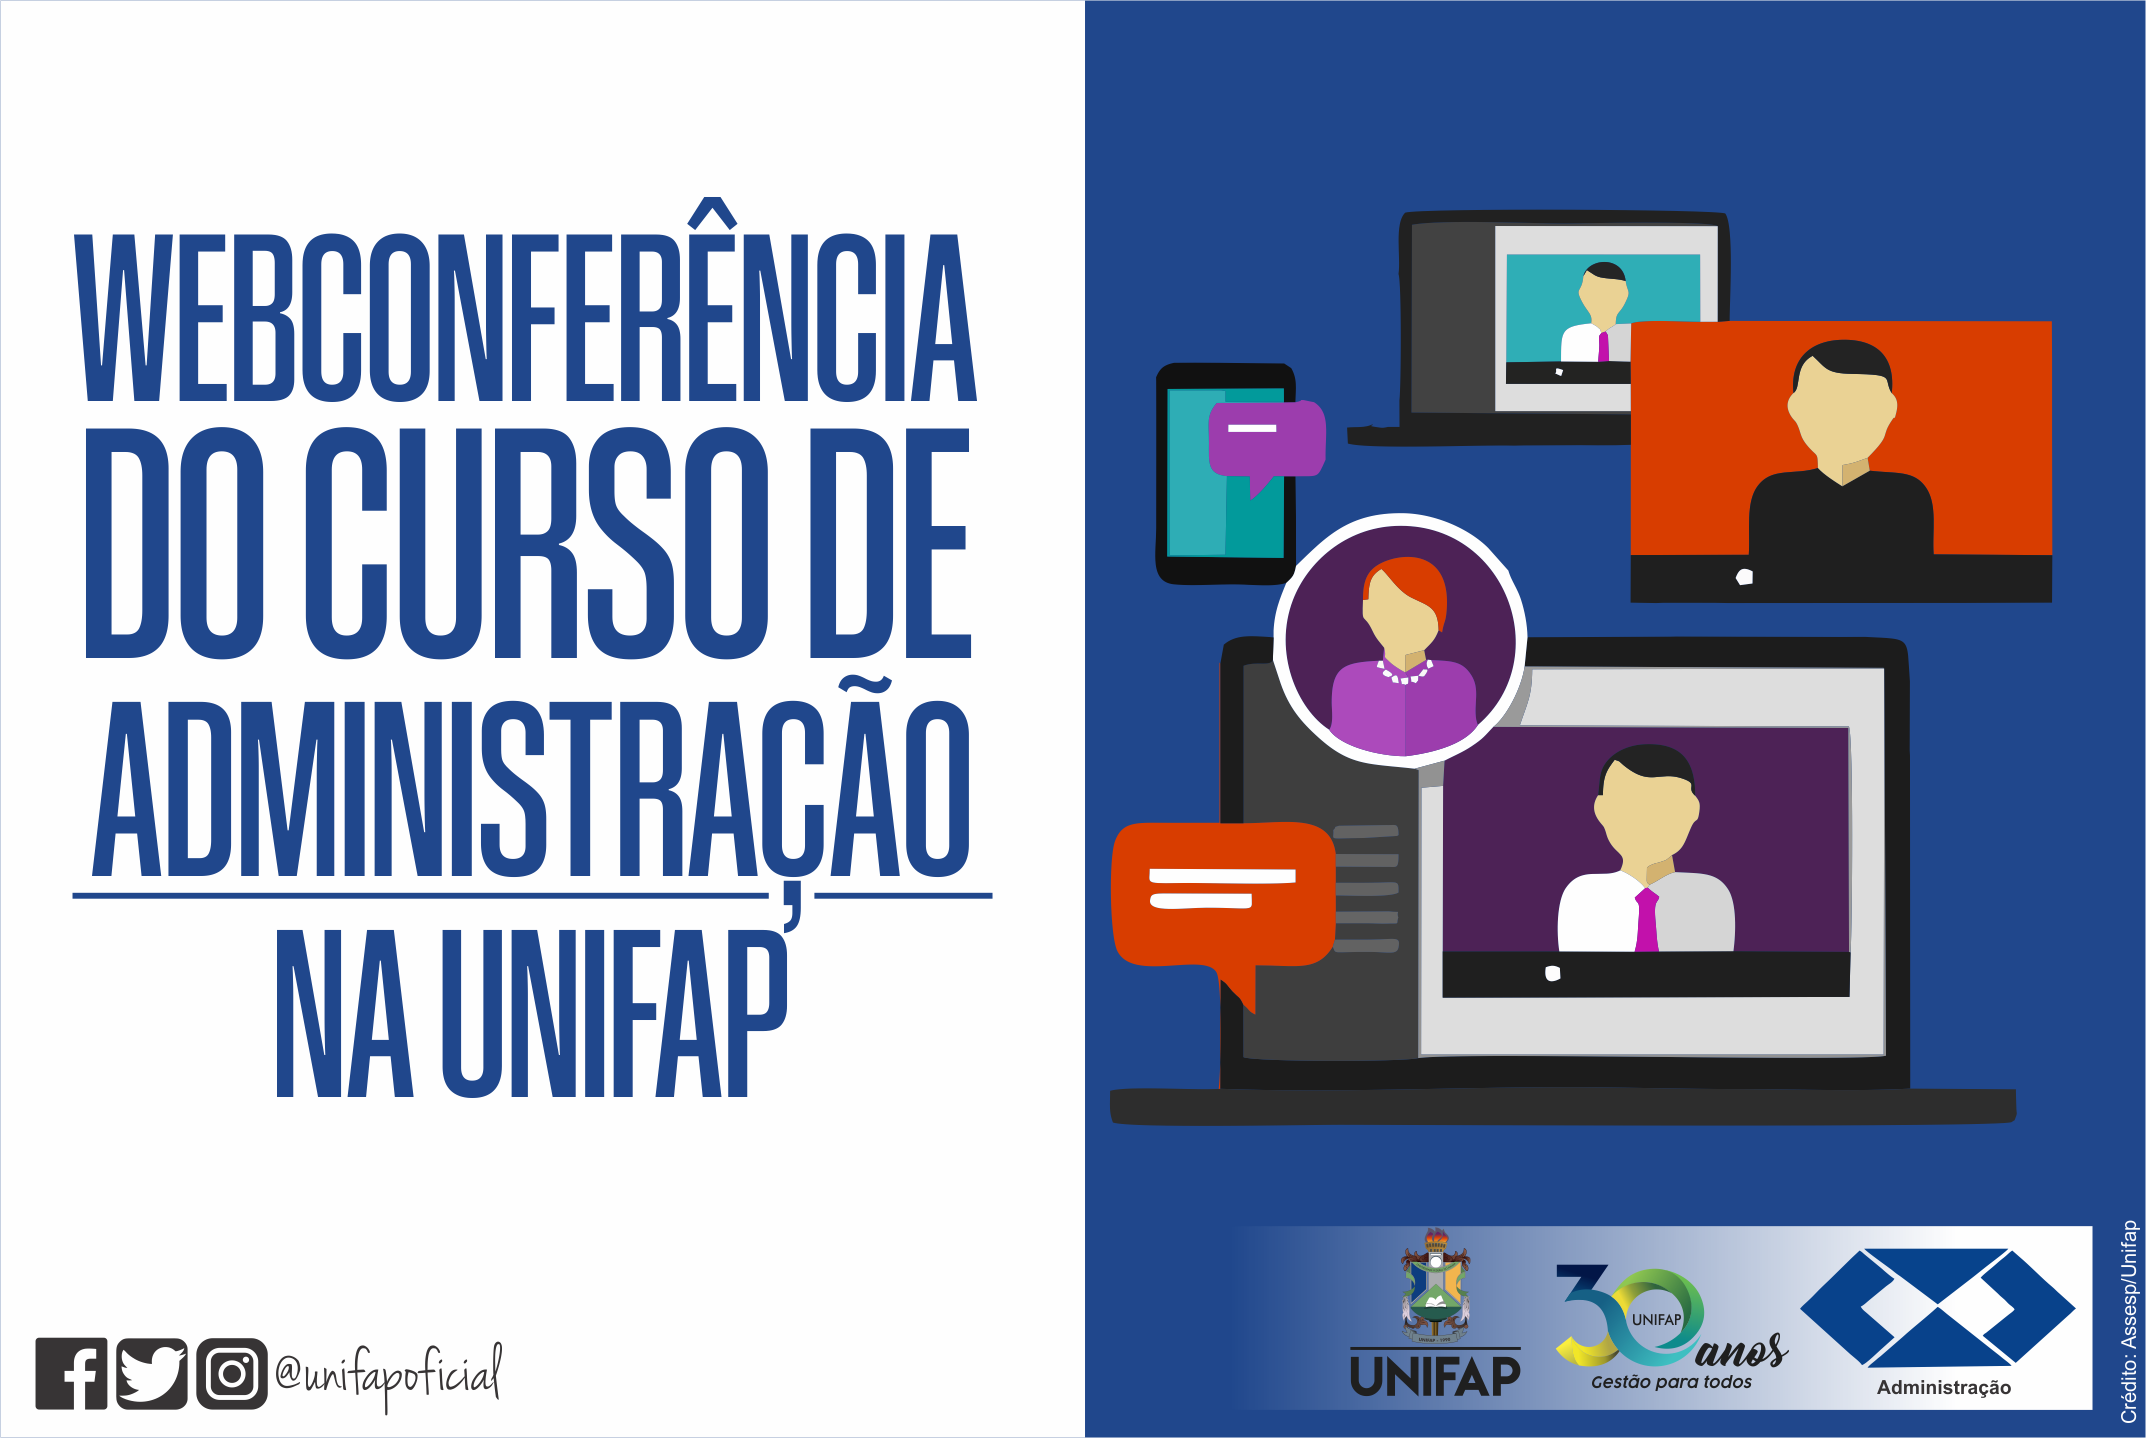 Curso de administração da UNIFAP realiza capacitação por Webconferência